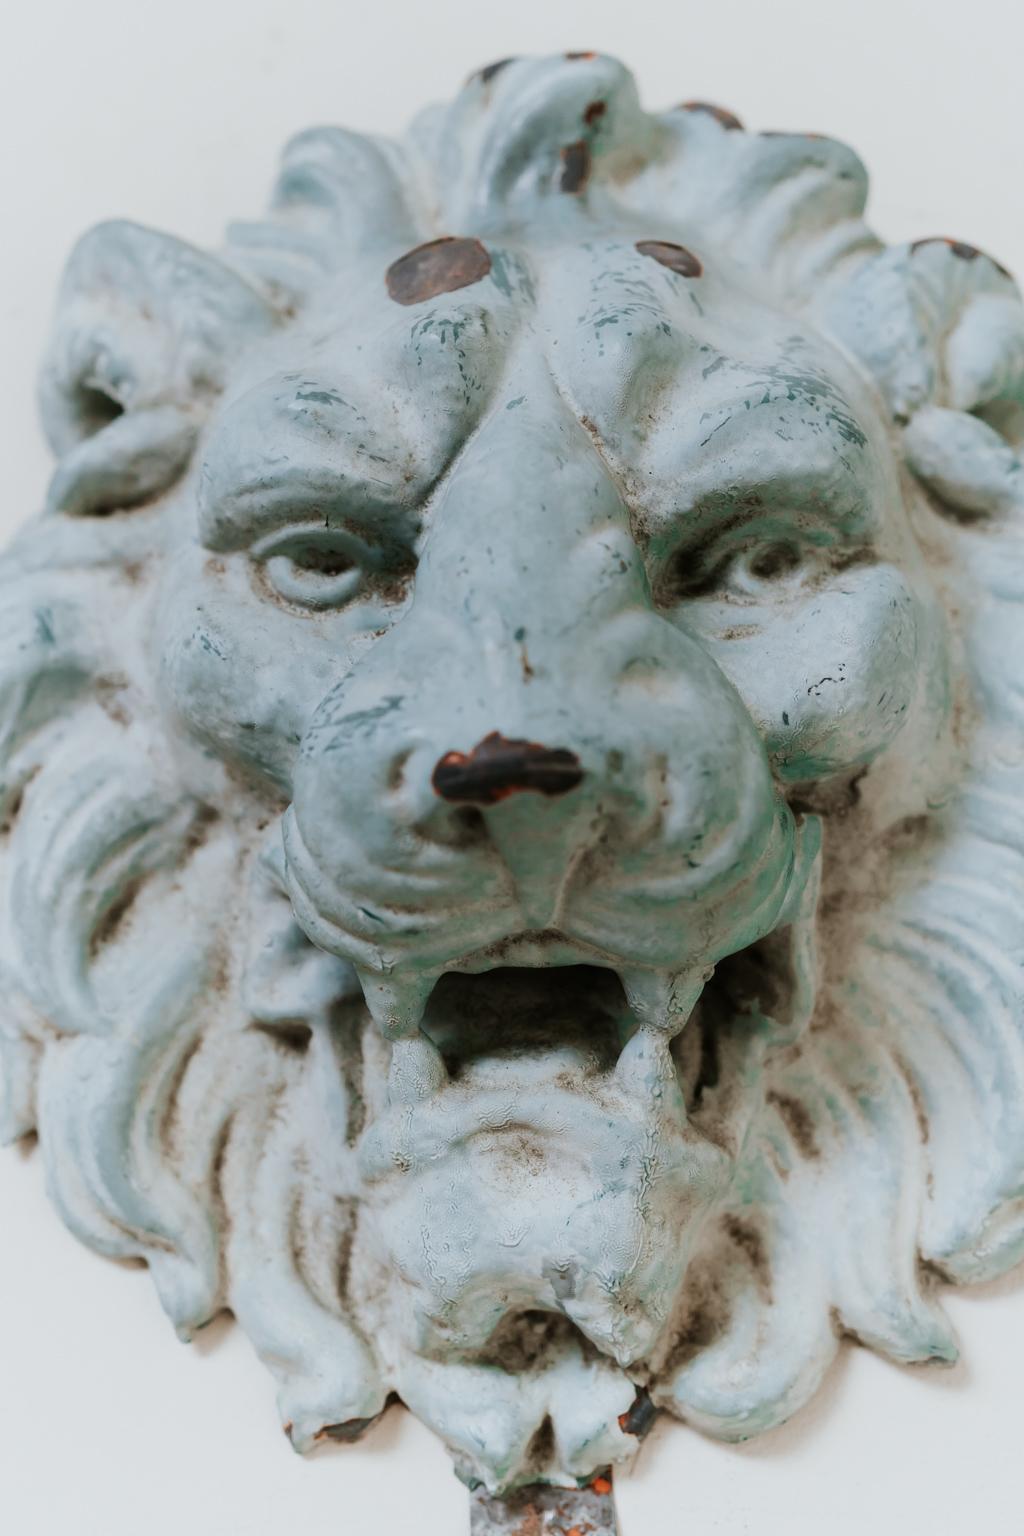 Merveilleuse patine grise sur ce lion en zinc, fabriqué au 19ème siècle, aimé des collectionneurs, une trouvaille assez rare.